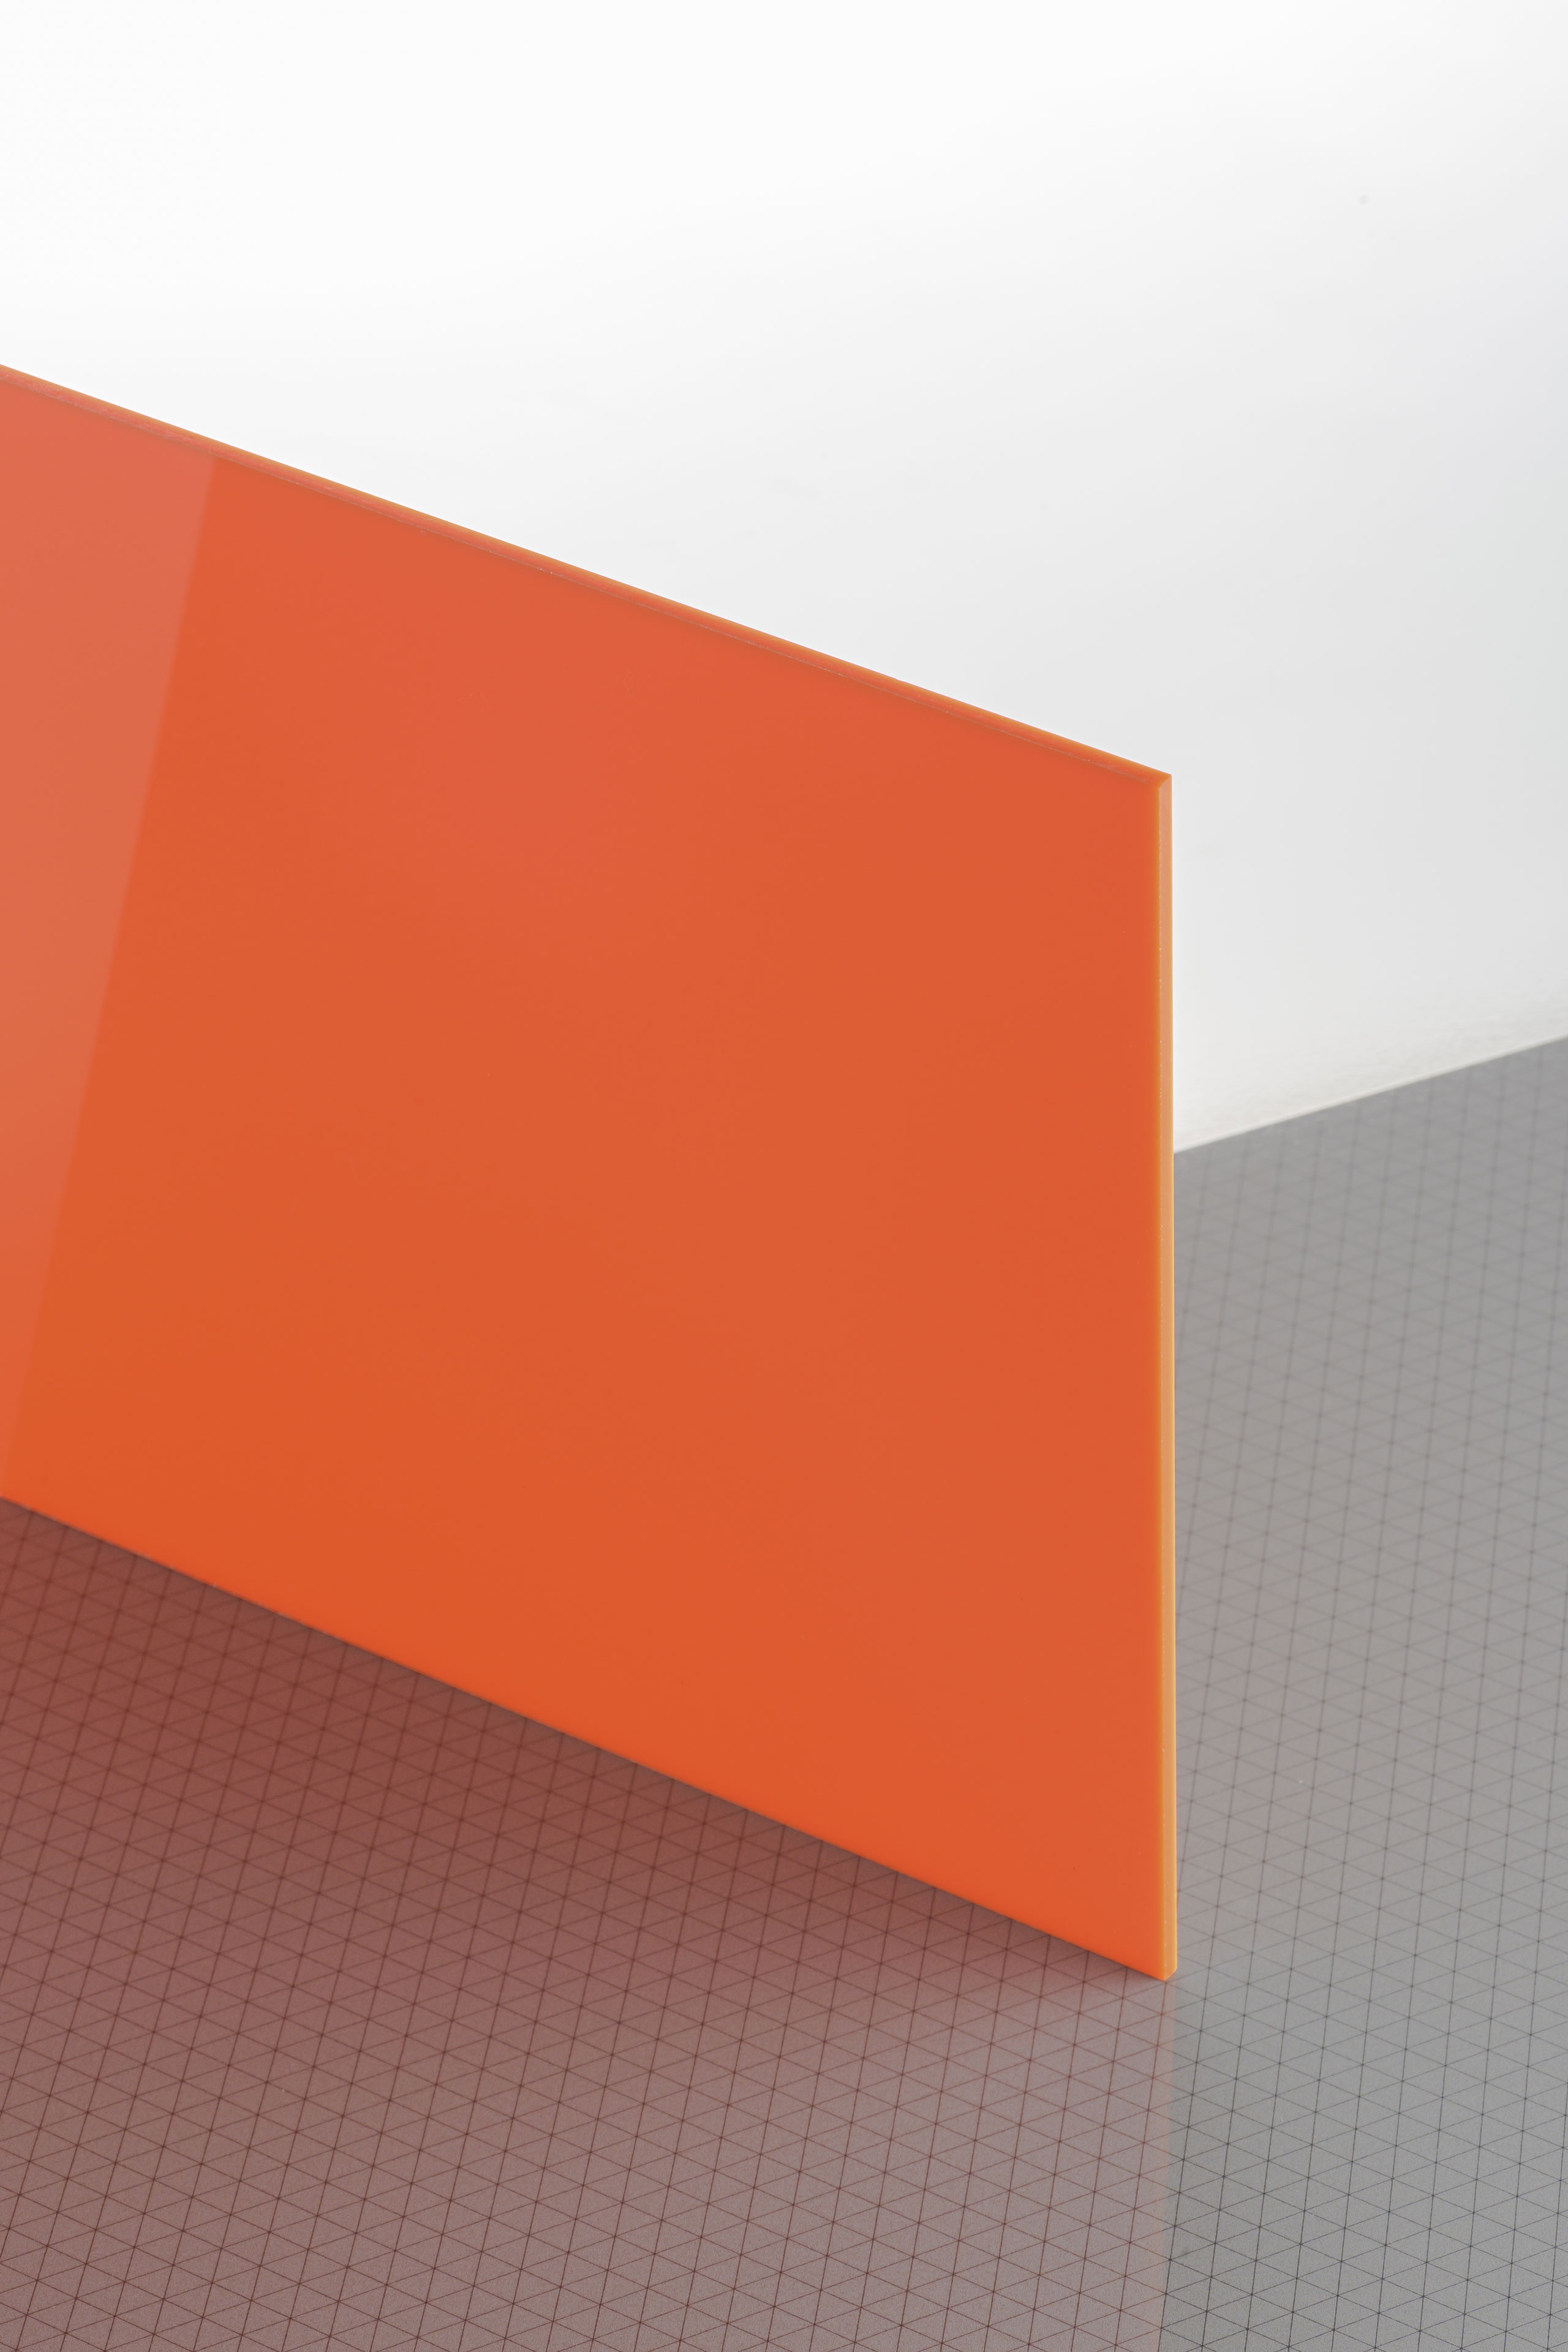 69,74 €/m² Acrylglas GS transparent getönt farbig blau rot orange gelb 2 mm 